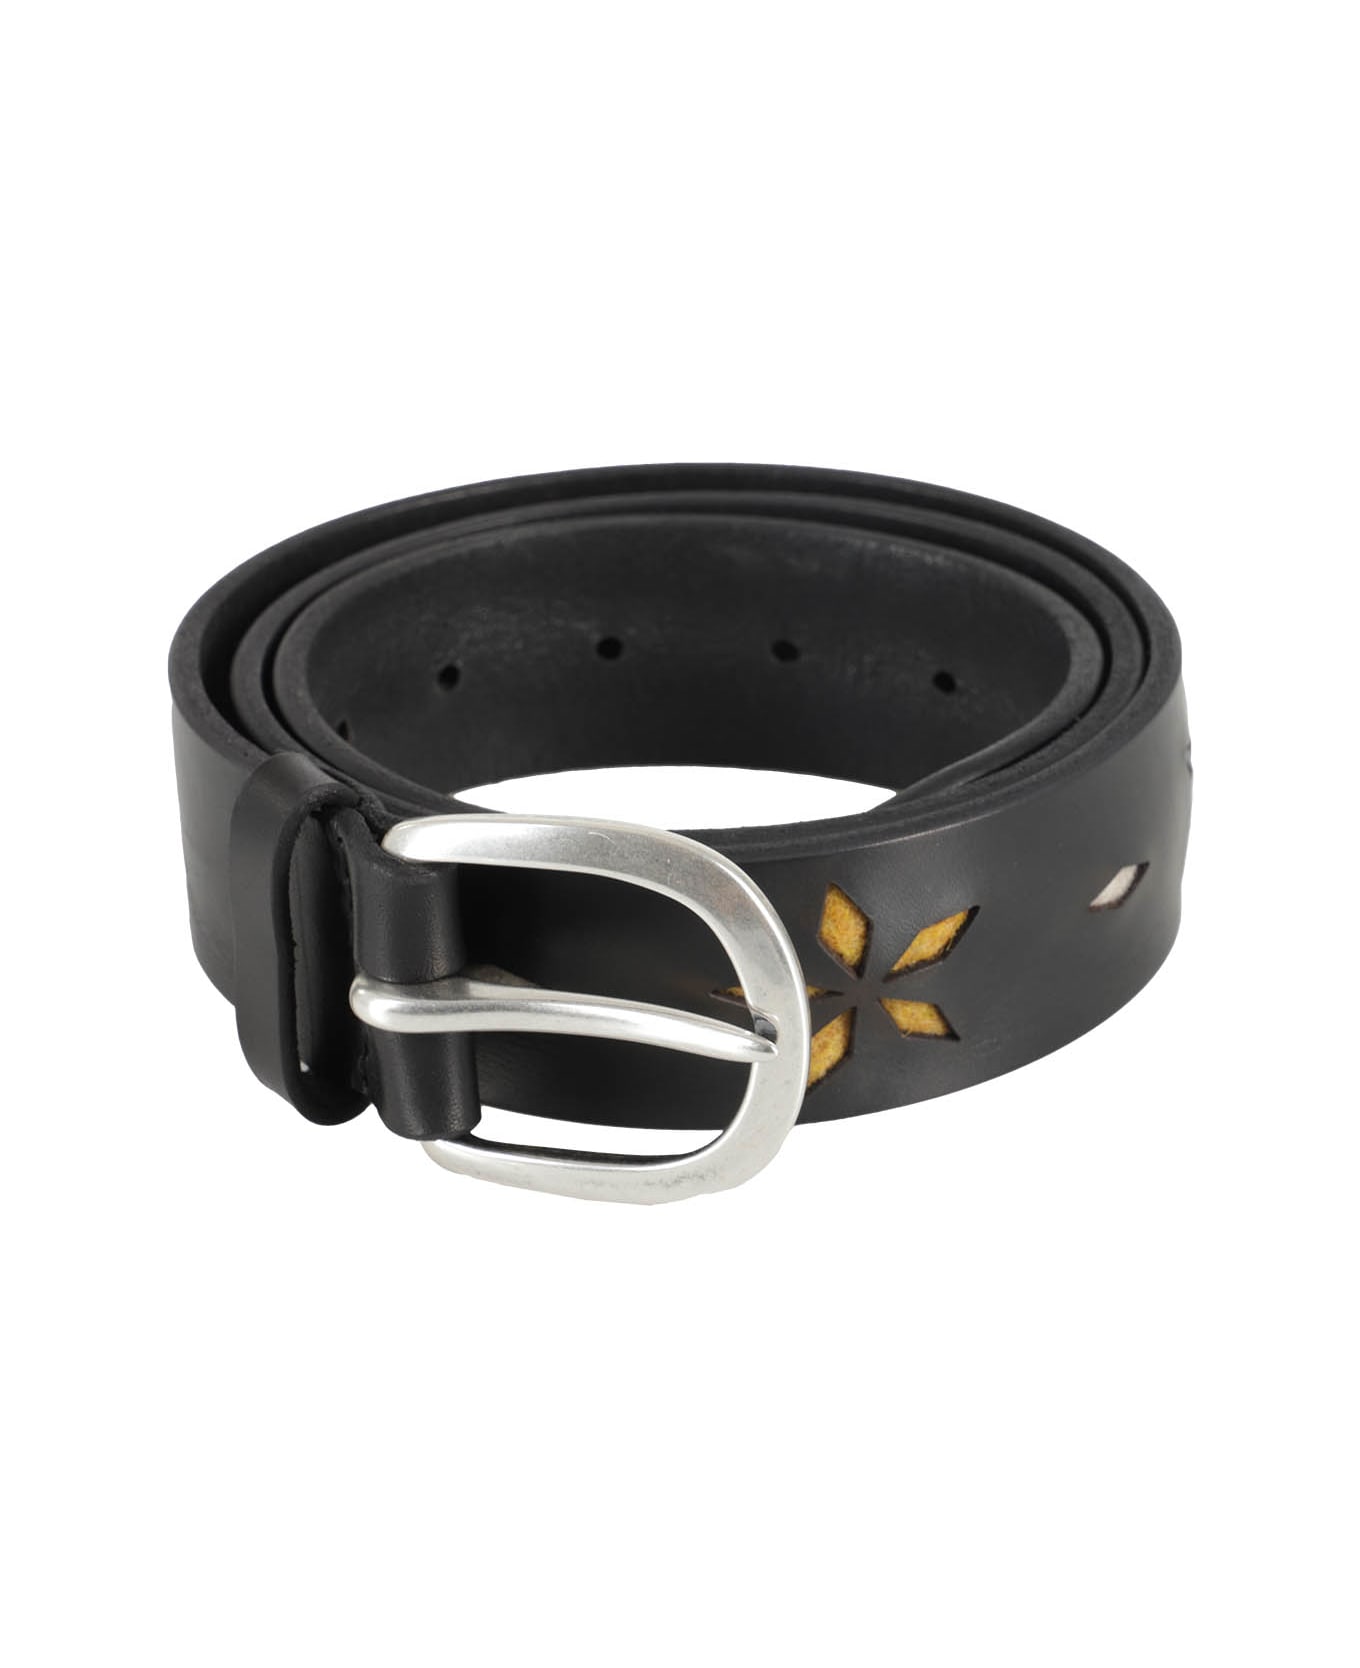 Orciani Leather Belt - Ner Nero ベルト